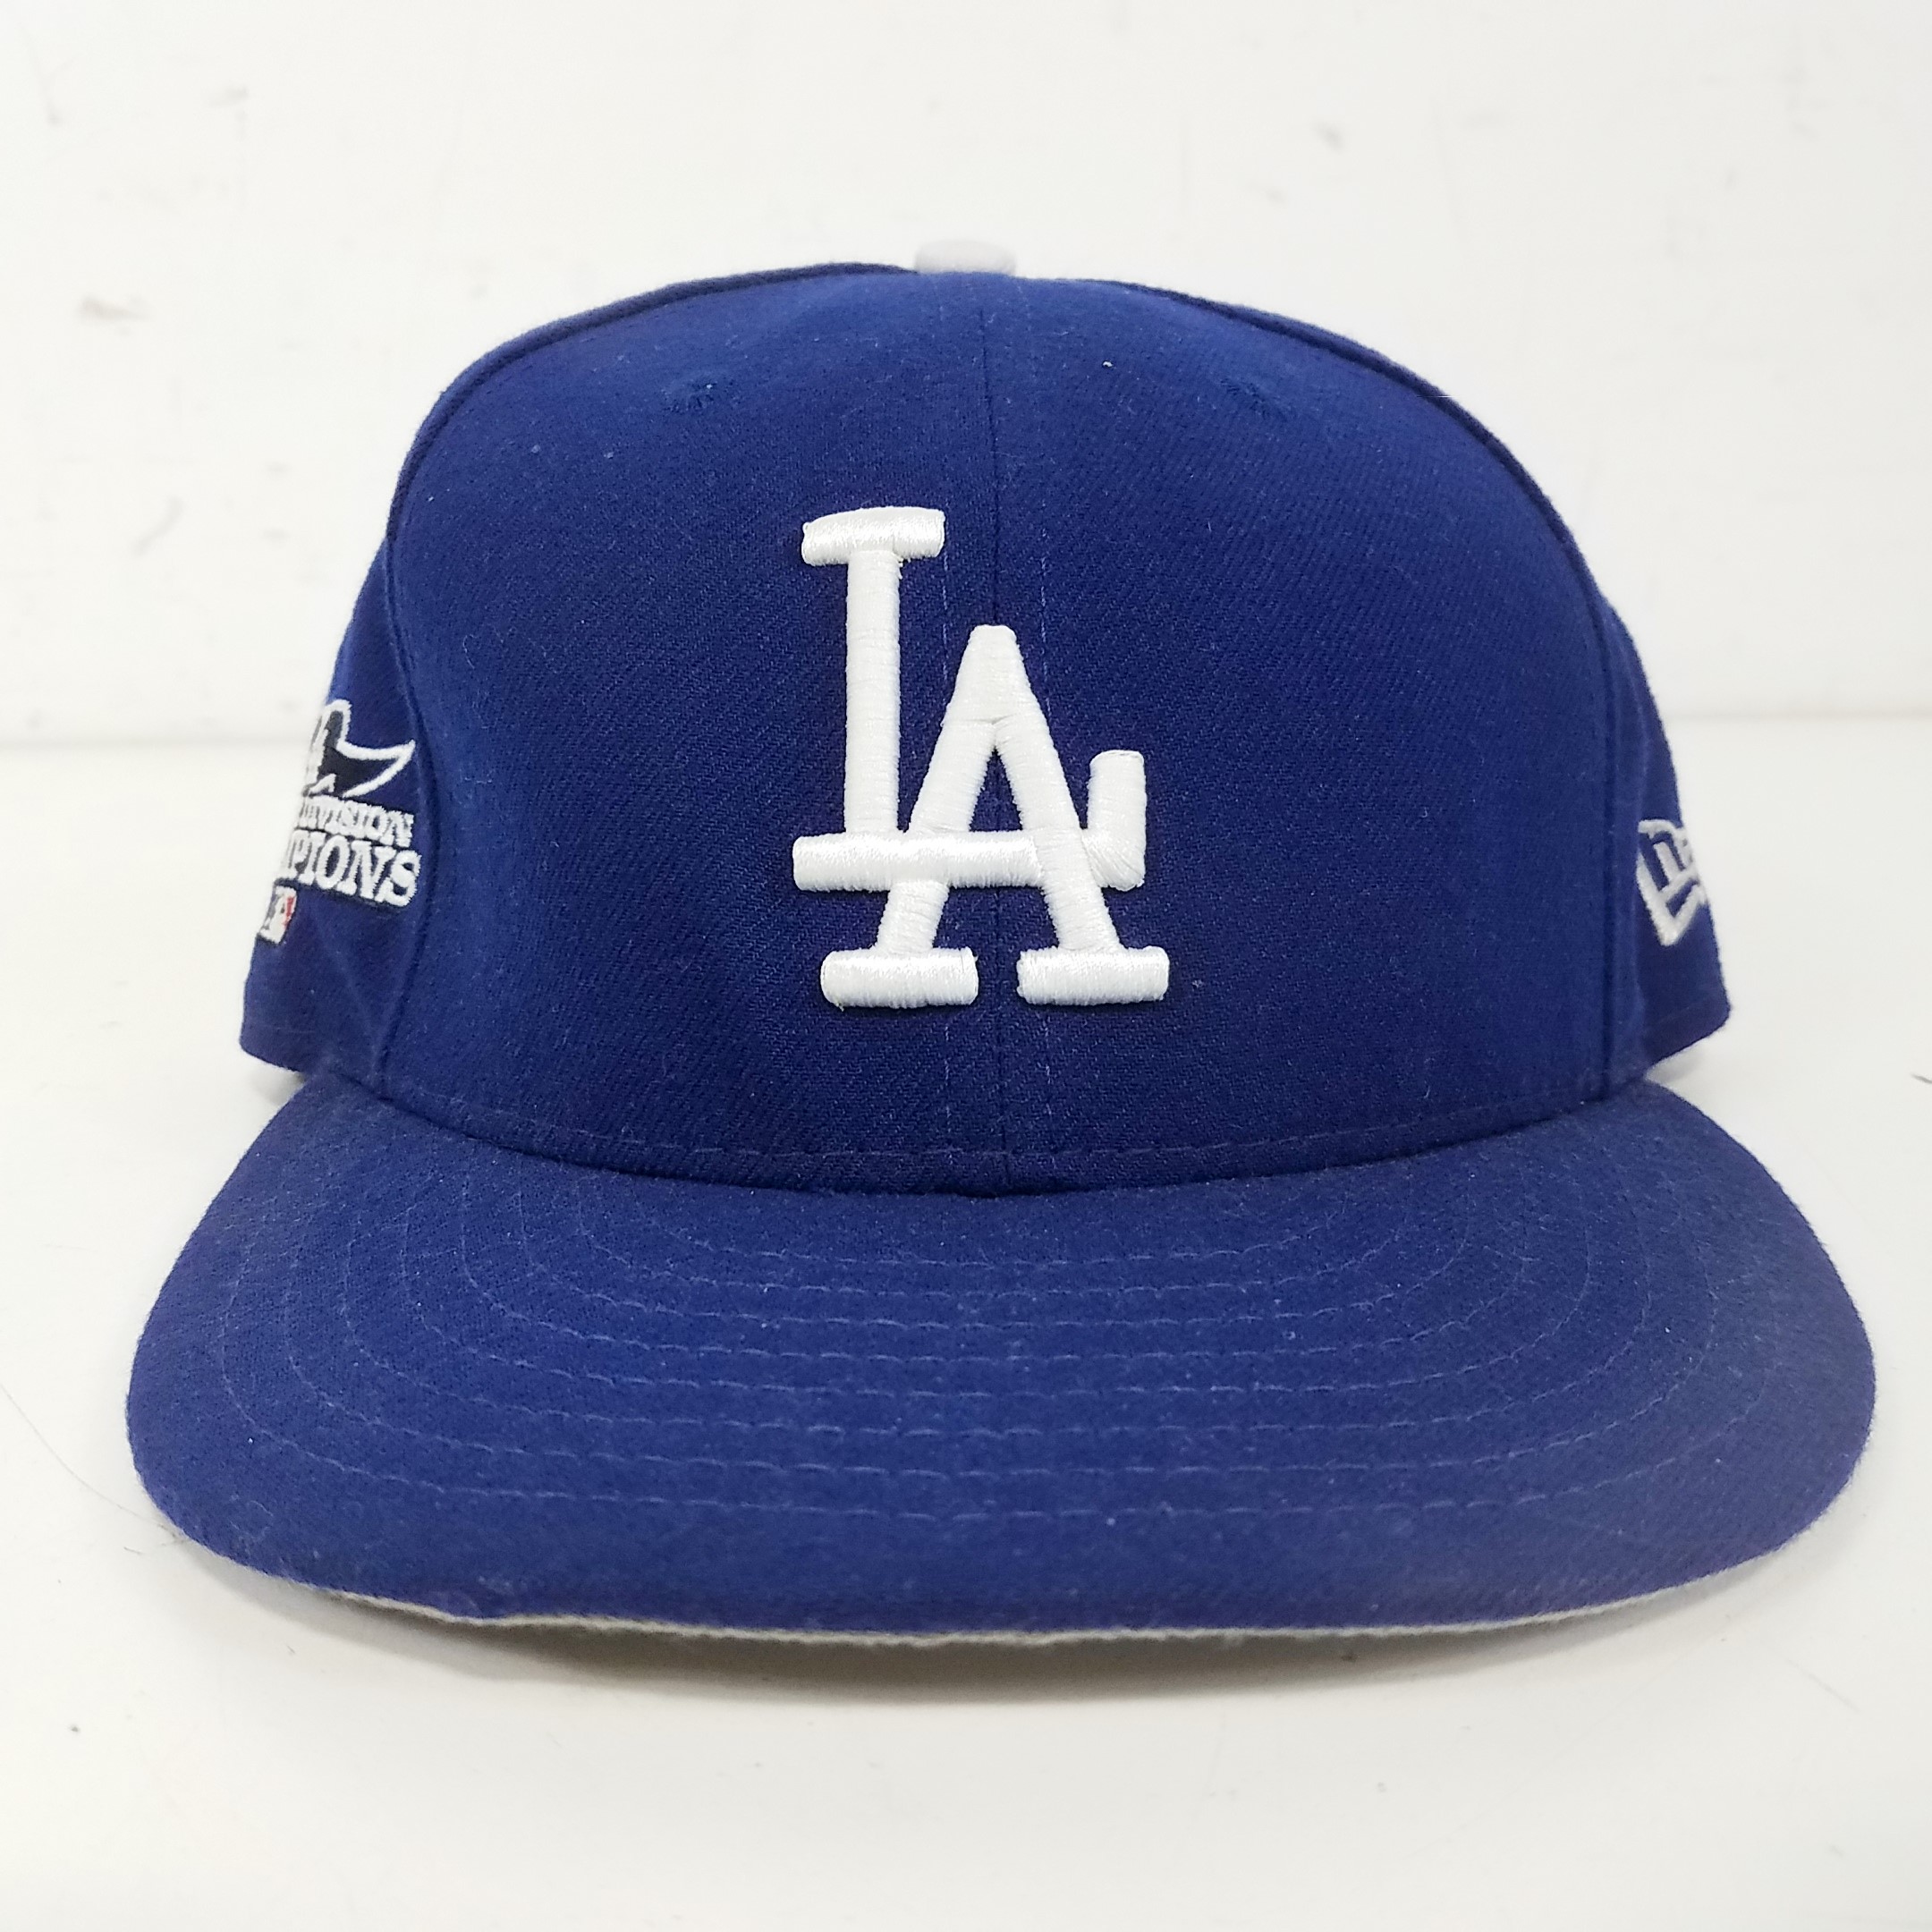 Buy the New Era 59FIFTY Dodger LA Hat